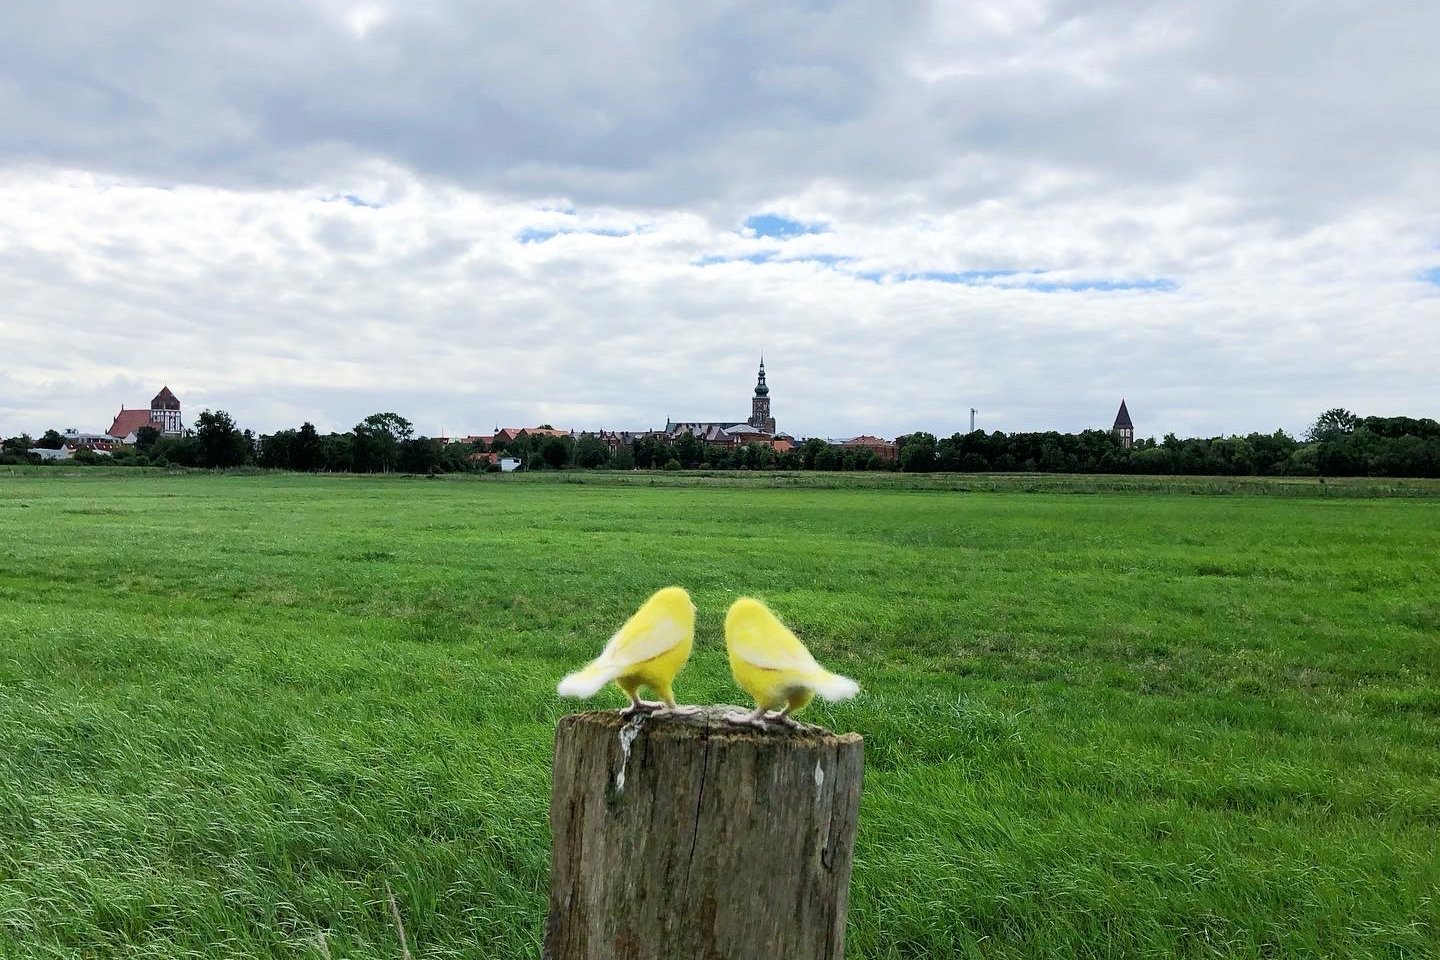 Die Kanarienvögel Roman & Tik auf den Wiesen bei Greifswald, in Rückansicht auf einem Holzpfahl sitzend. Im Hintergrund die Stadtsilhouette Greifswalds.